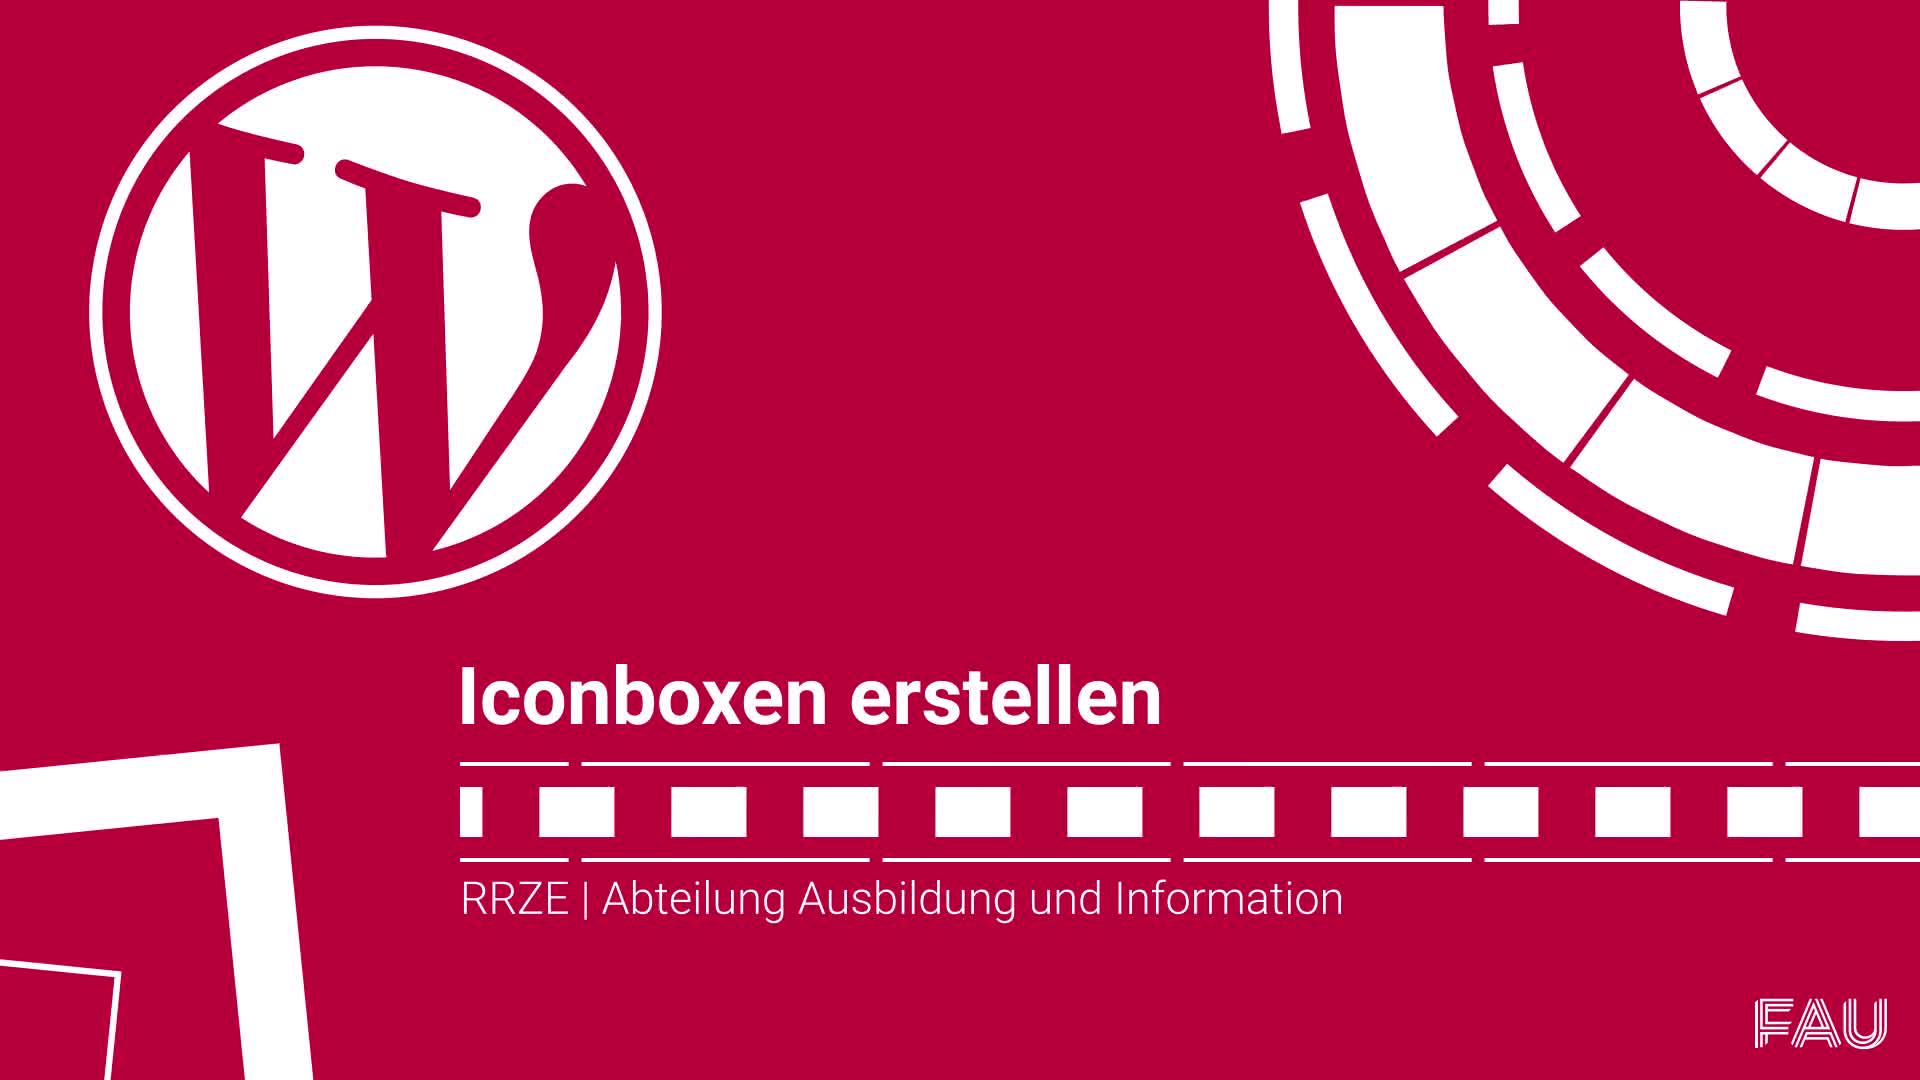 Iconboxen erstellen auf dem CMS preview image